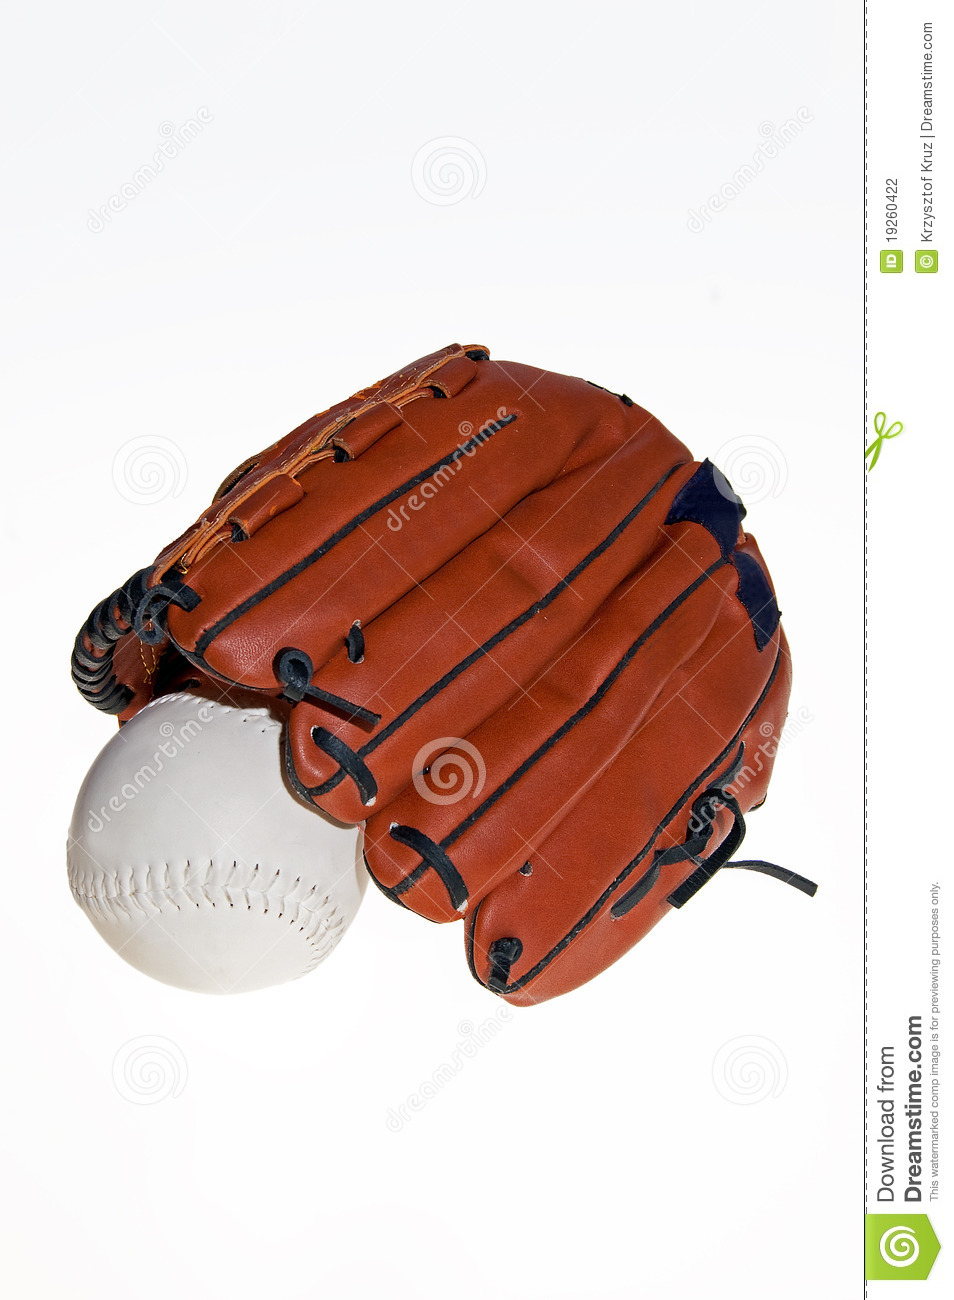 Baseball Glove And Ball Stock Photography   Image  19260422